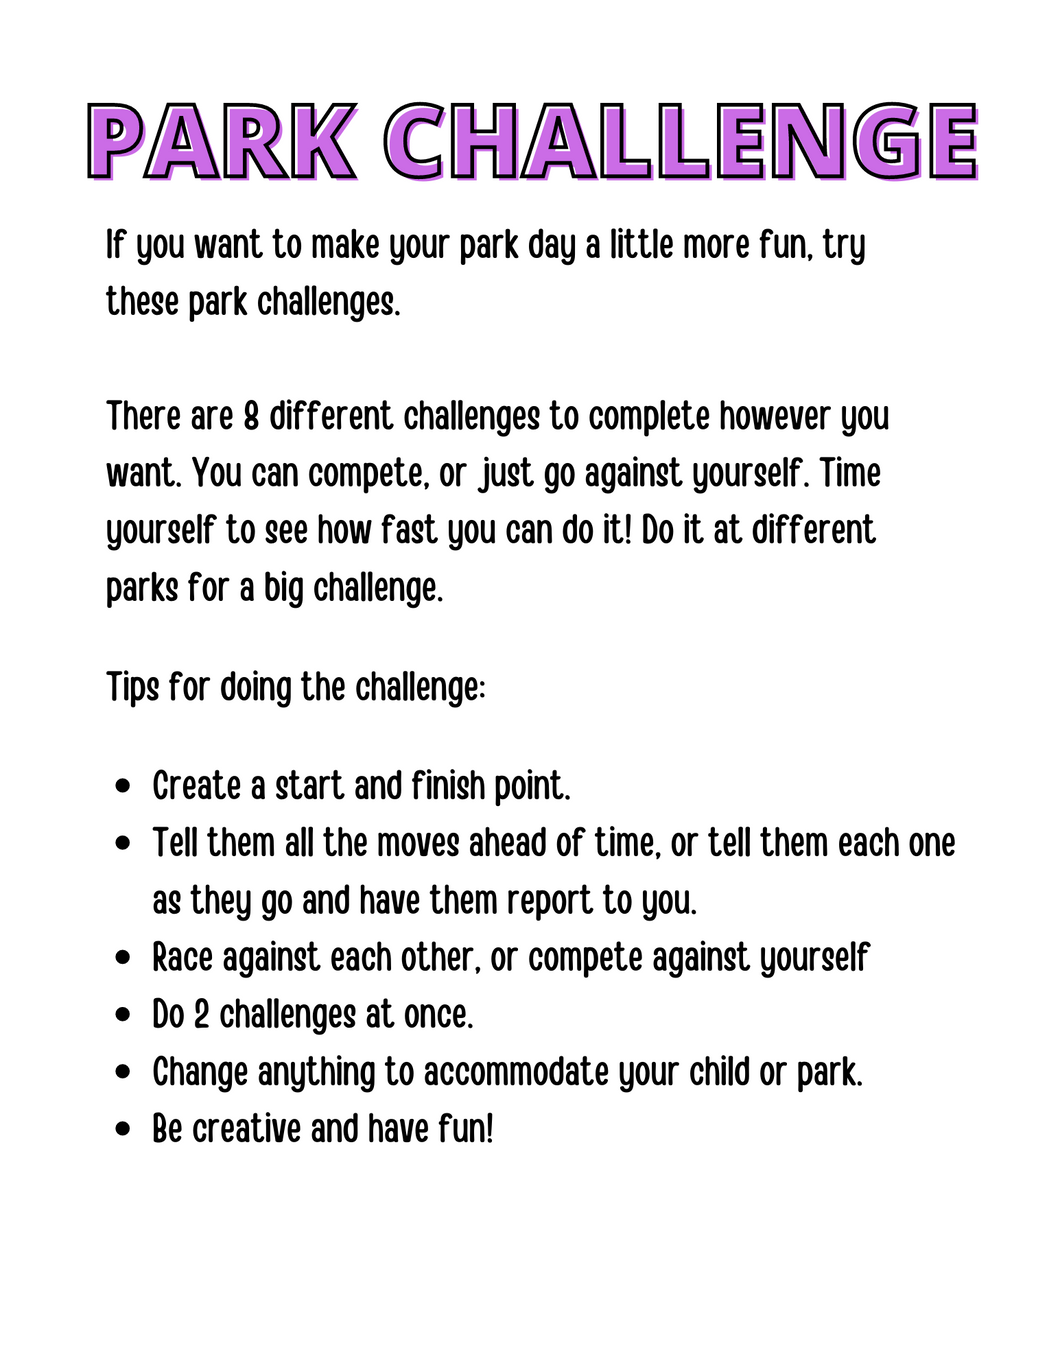 Park Challenge for Kids